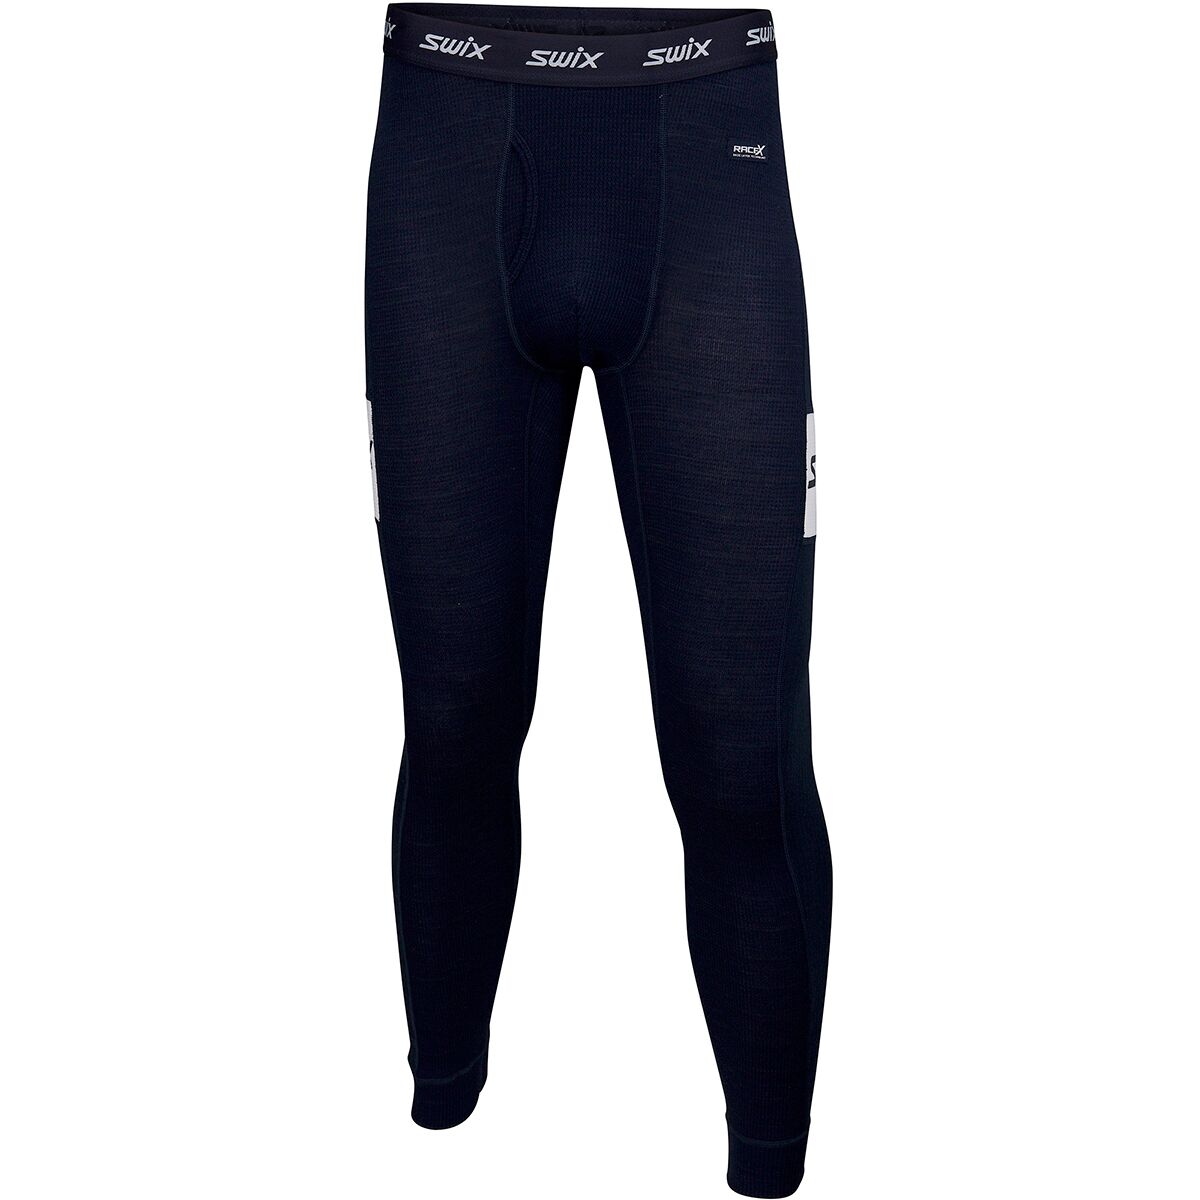 Swix RaceX Warm Bodywear Pant - Men's